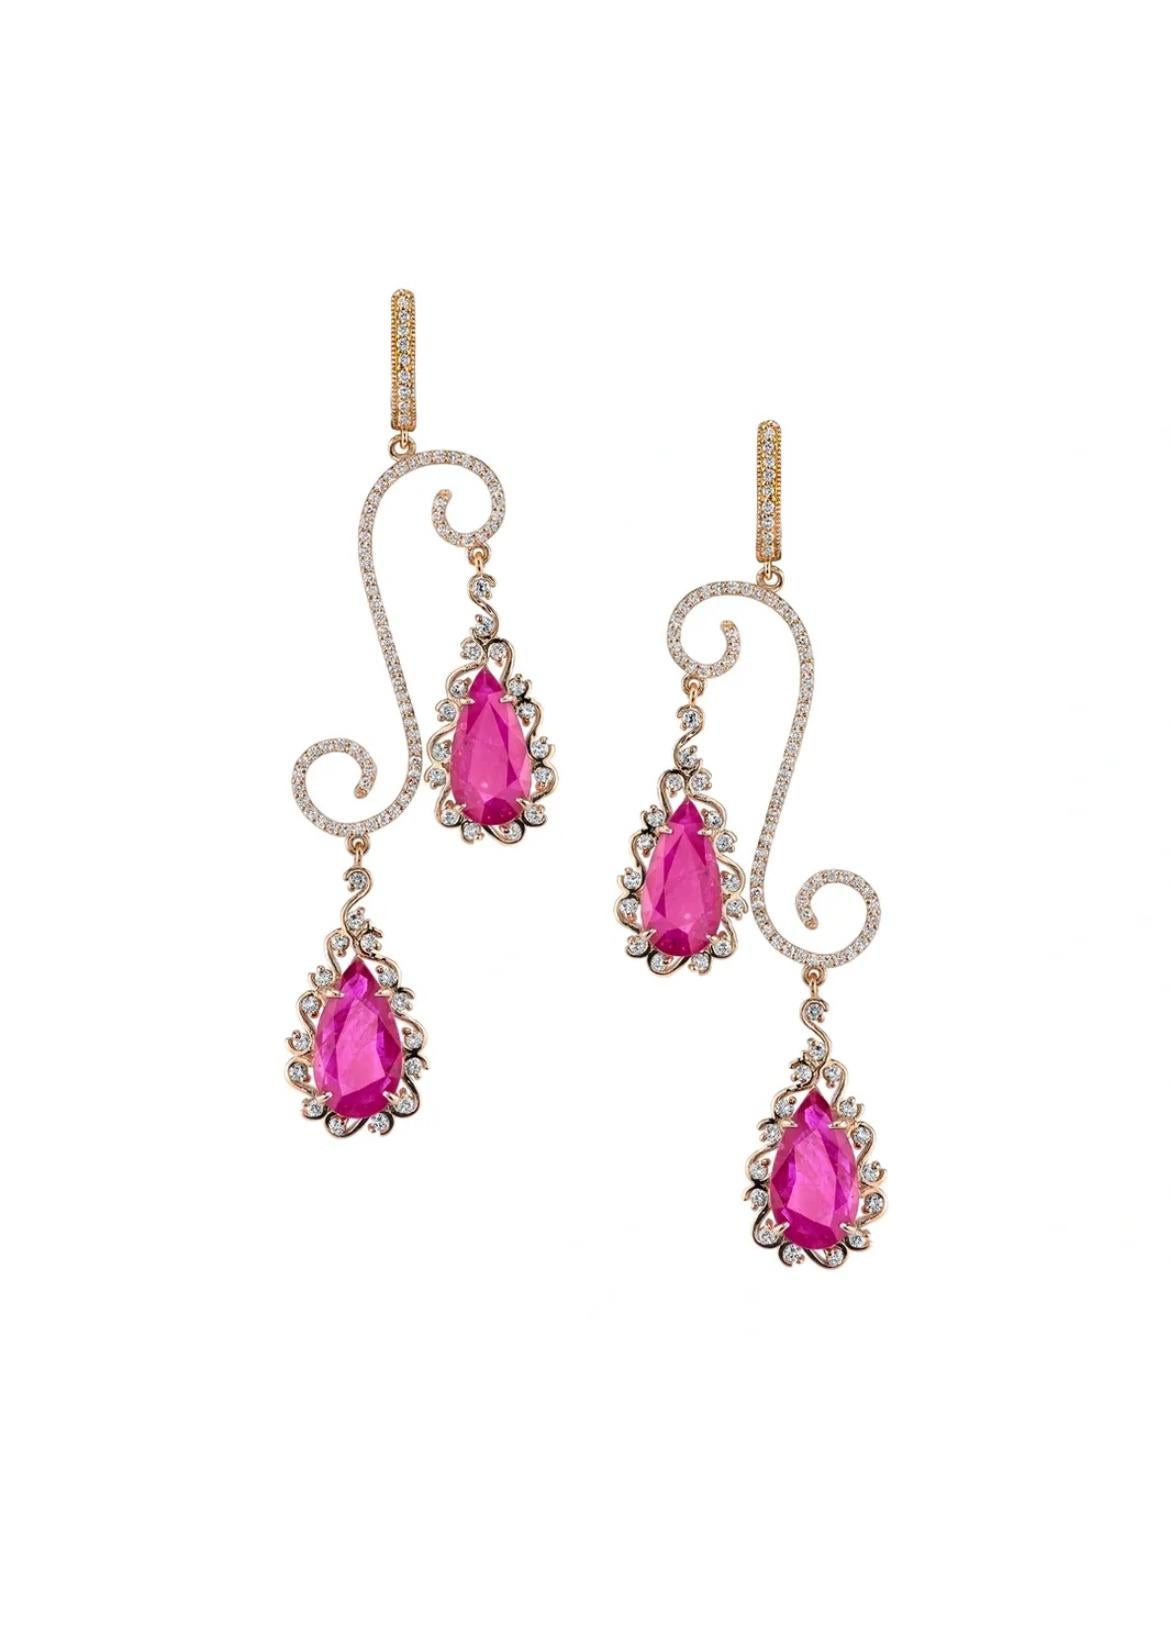 Pear Cut Ruby chandelier earrings.  For Sale